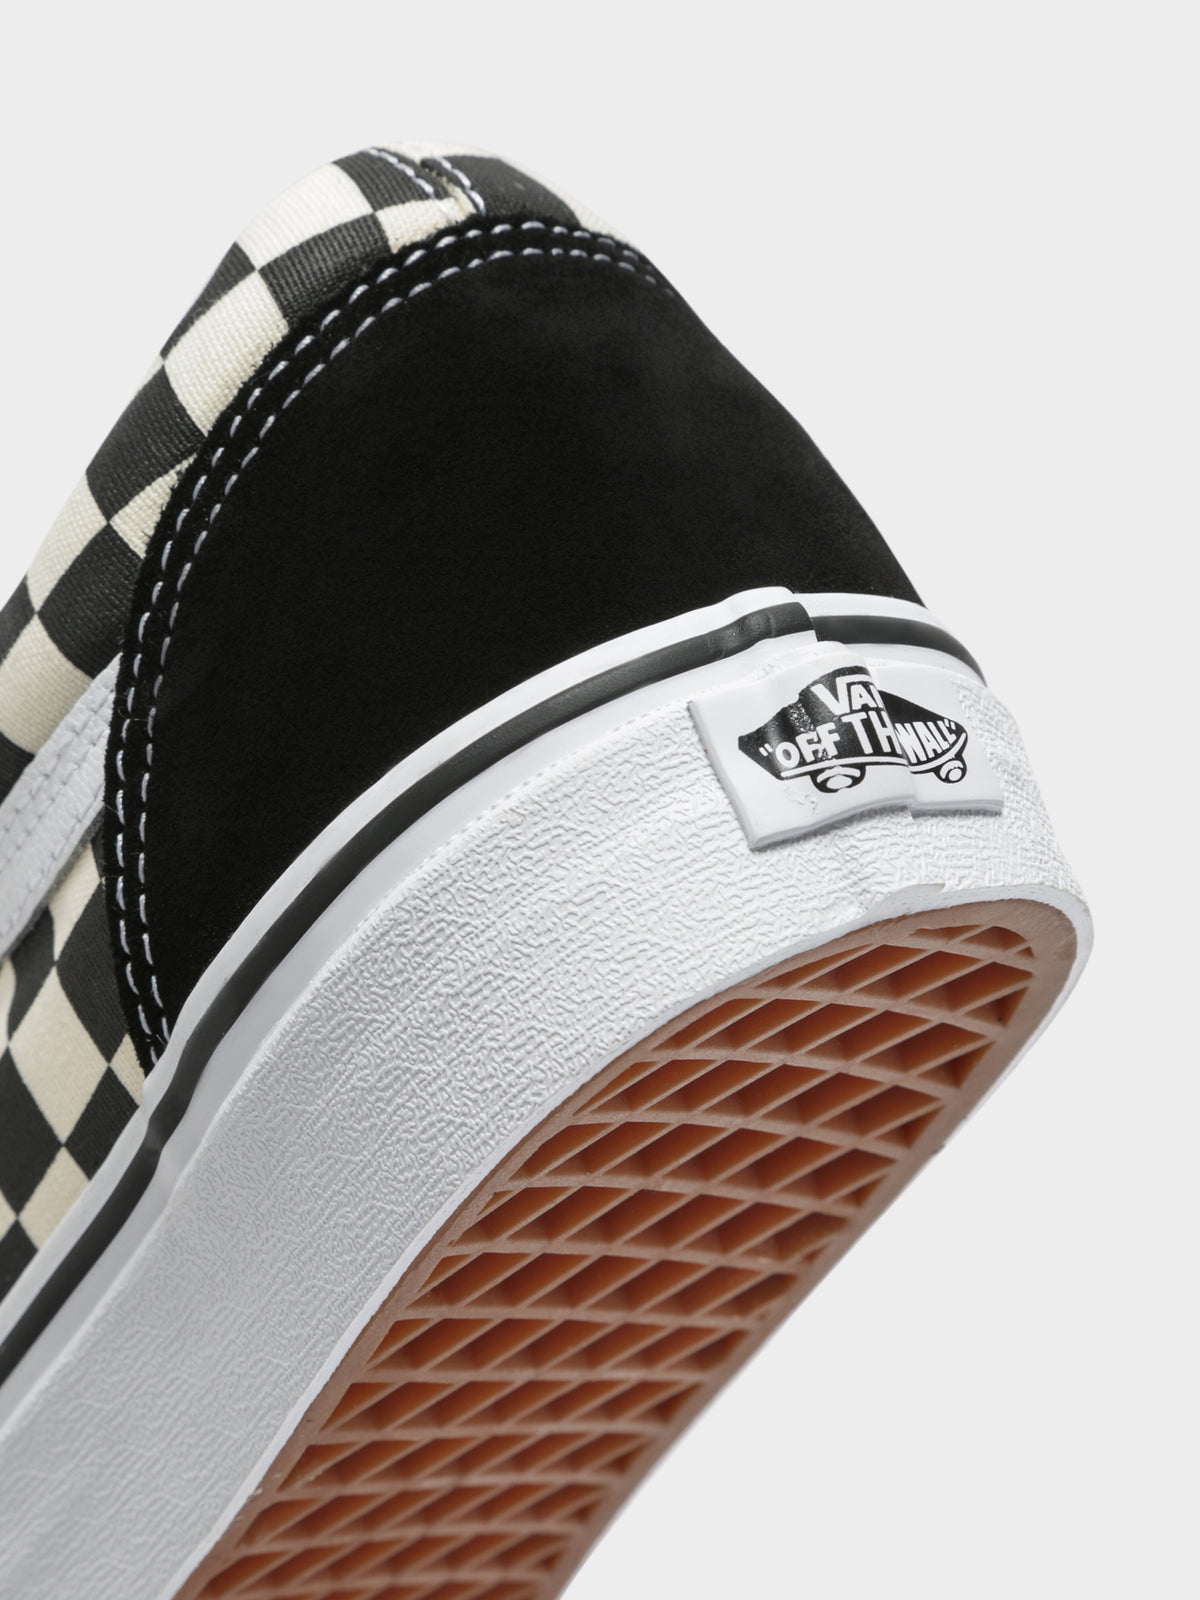 Unisex Old Skool Checkered Sneaker in Black &amp; White